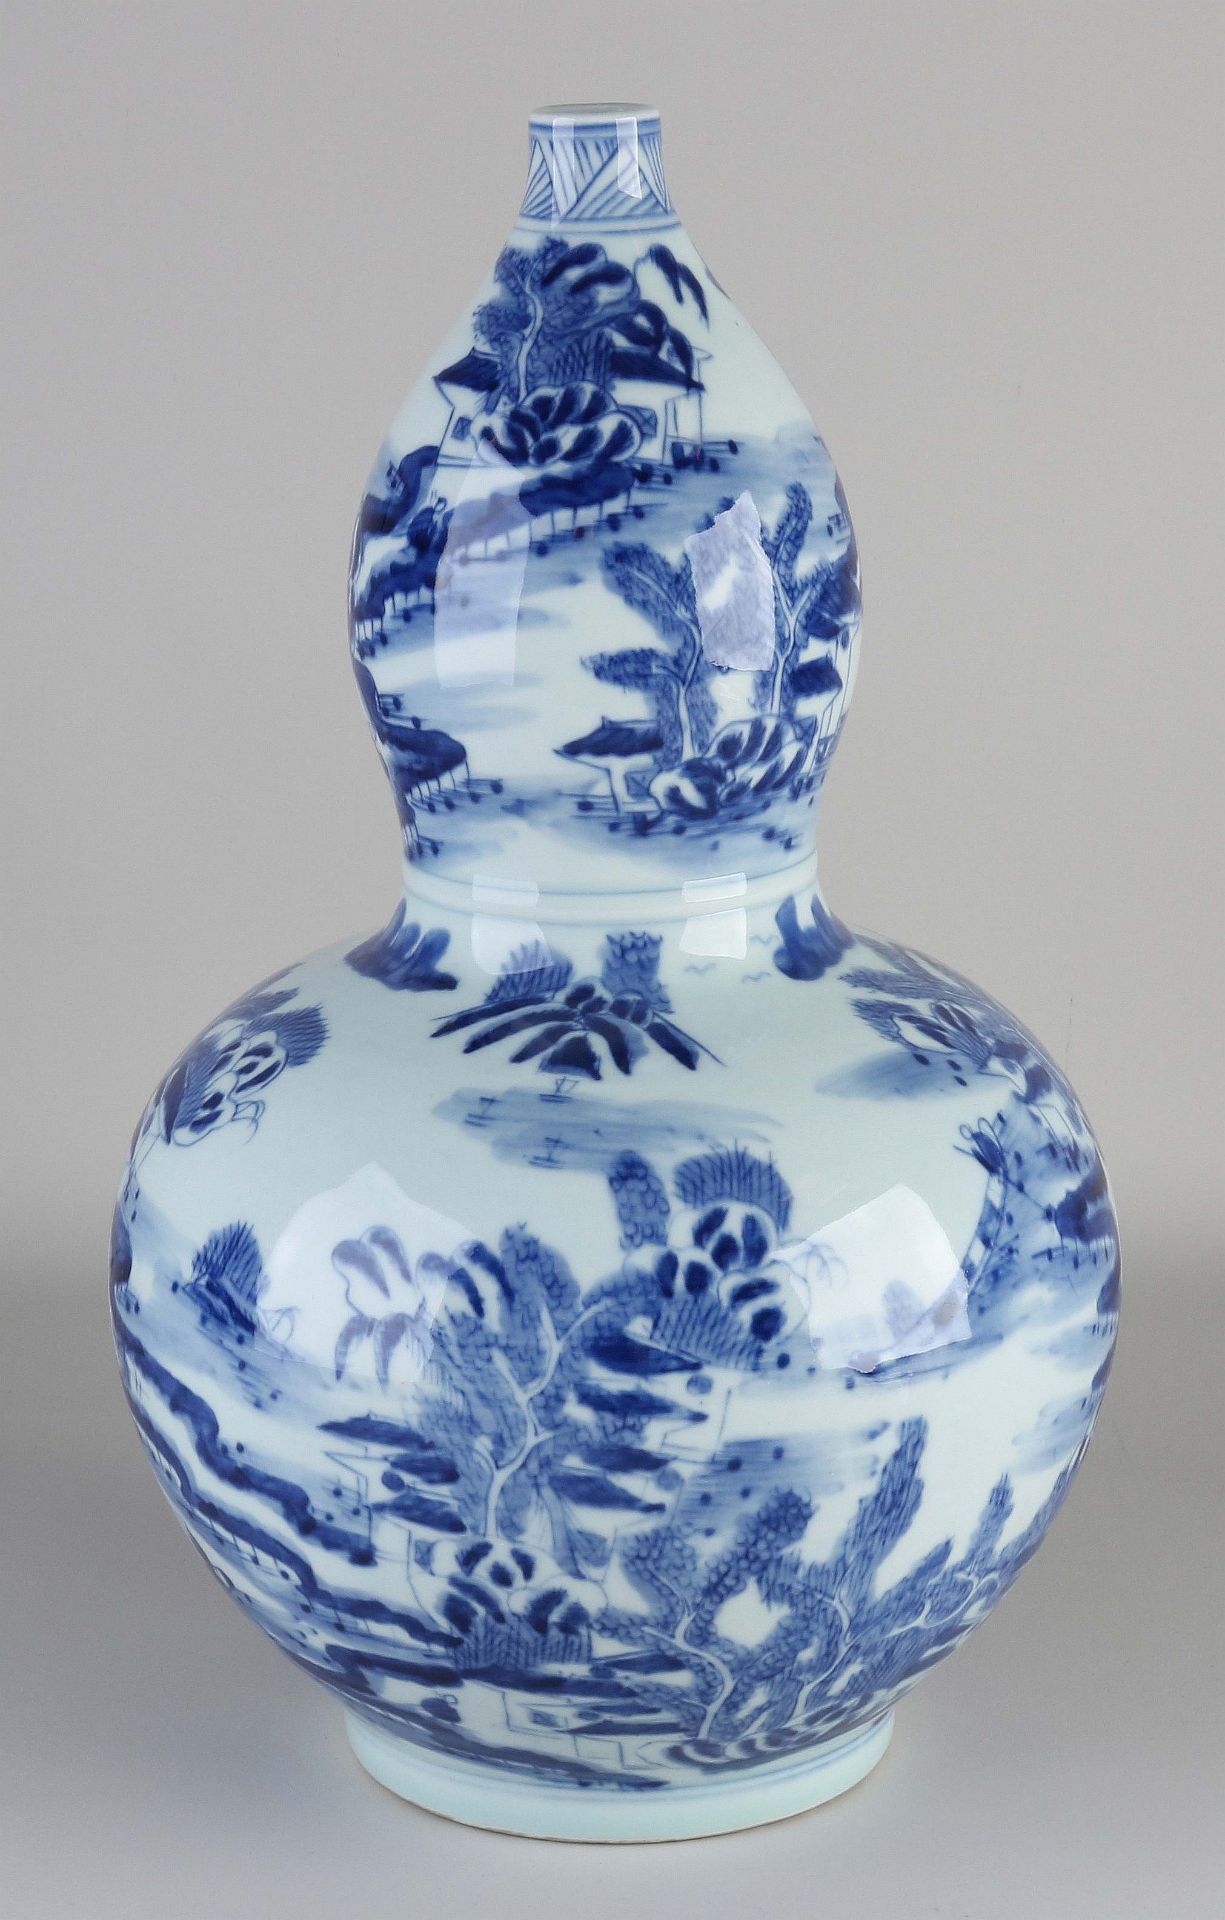 Large Chinese knob vase, H 39.5 cm. - Image 2 of 3